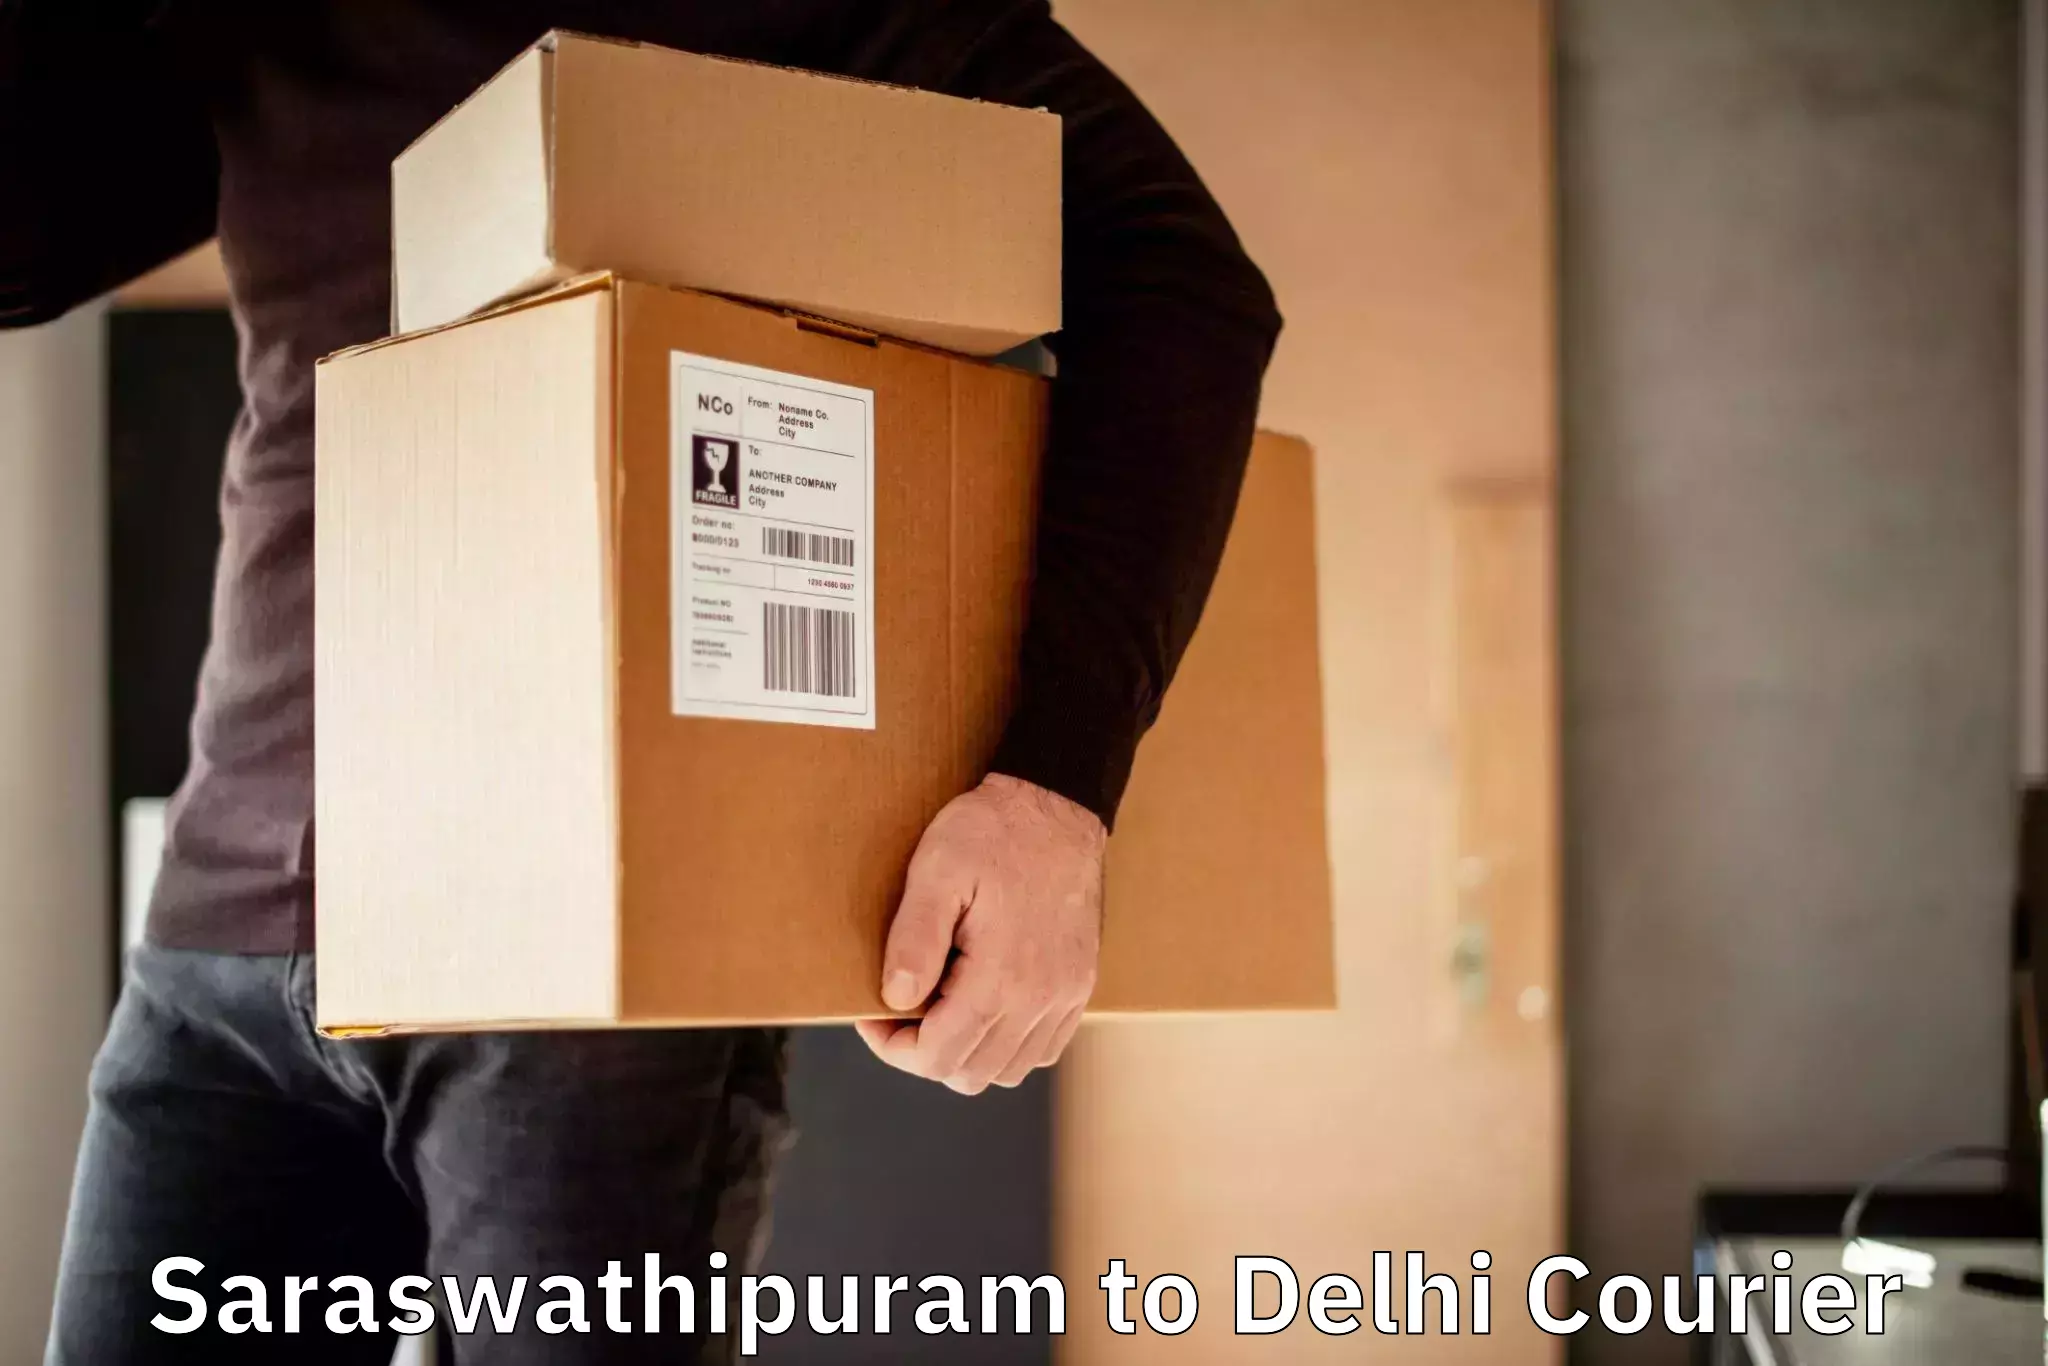 Custom courier packaging Saraswathipuram to Jawaharlal Nehru University New Delhi